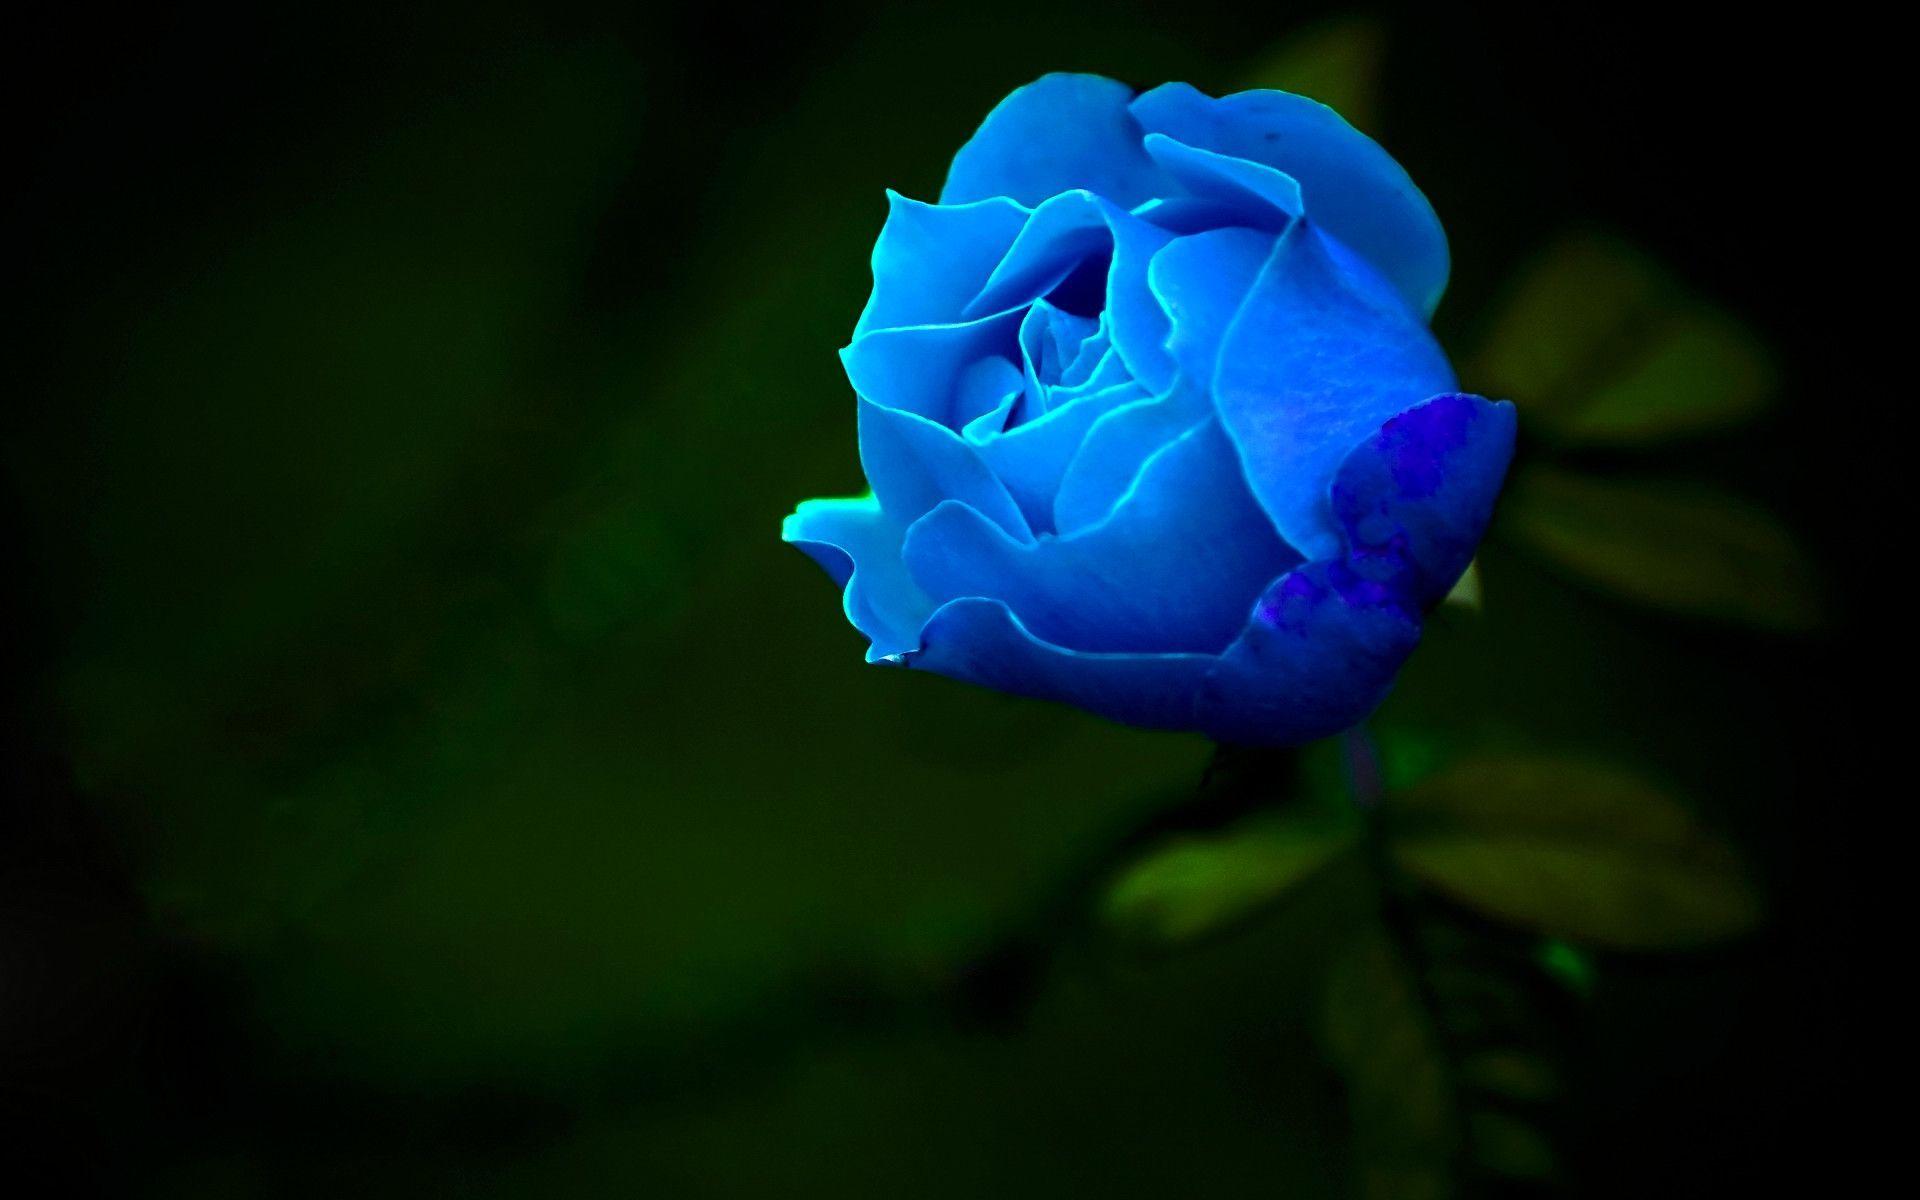 Hoa hồng xanh là biểu tượng của sự độc đáo và hiếm có. Với sắc xanh nhẹ nhàng và dịu mắt, loài hoa này mang lại cho bạn sự bình yên và thanh tịnh. Hãy cùng xem những hình ảnh về hoa hồng xanh để khám phá vẻ đẹp riêng biệt của chúng.